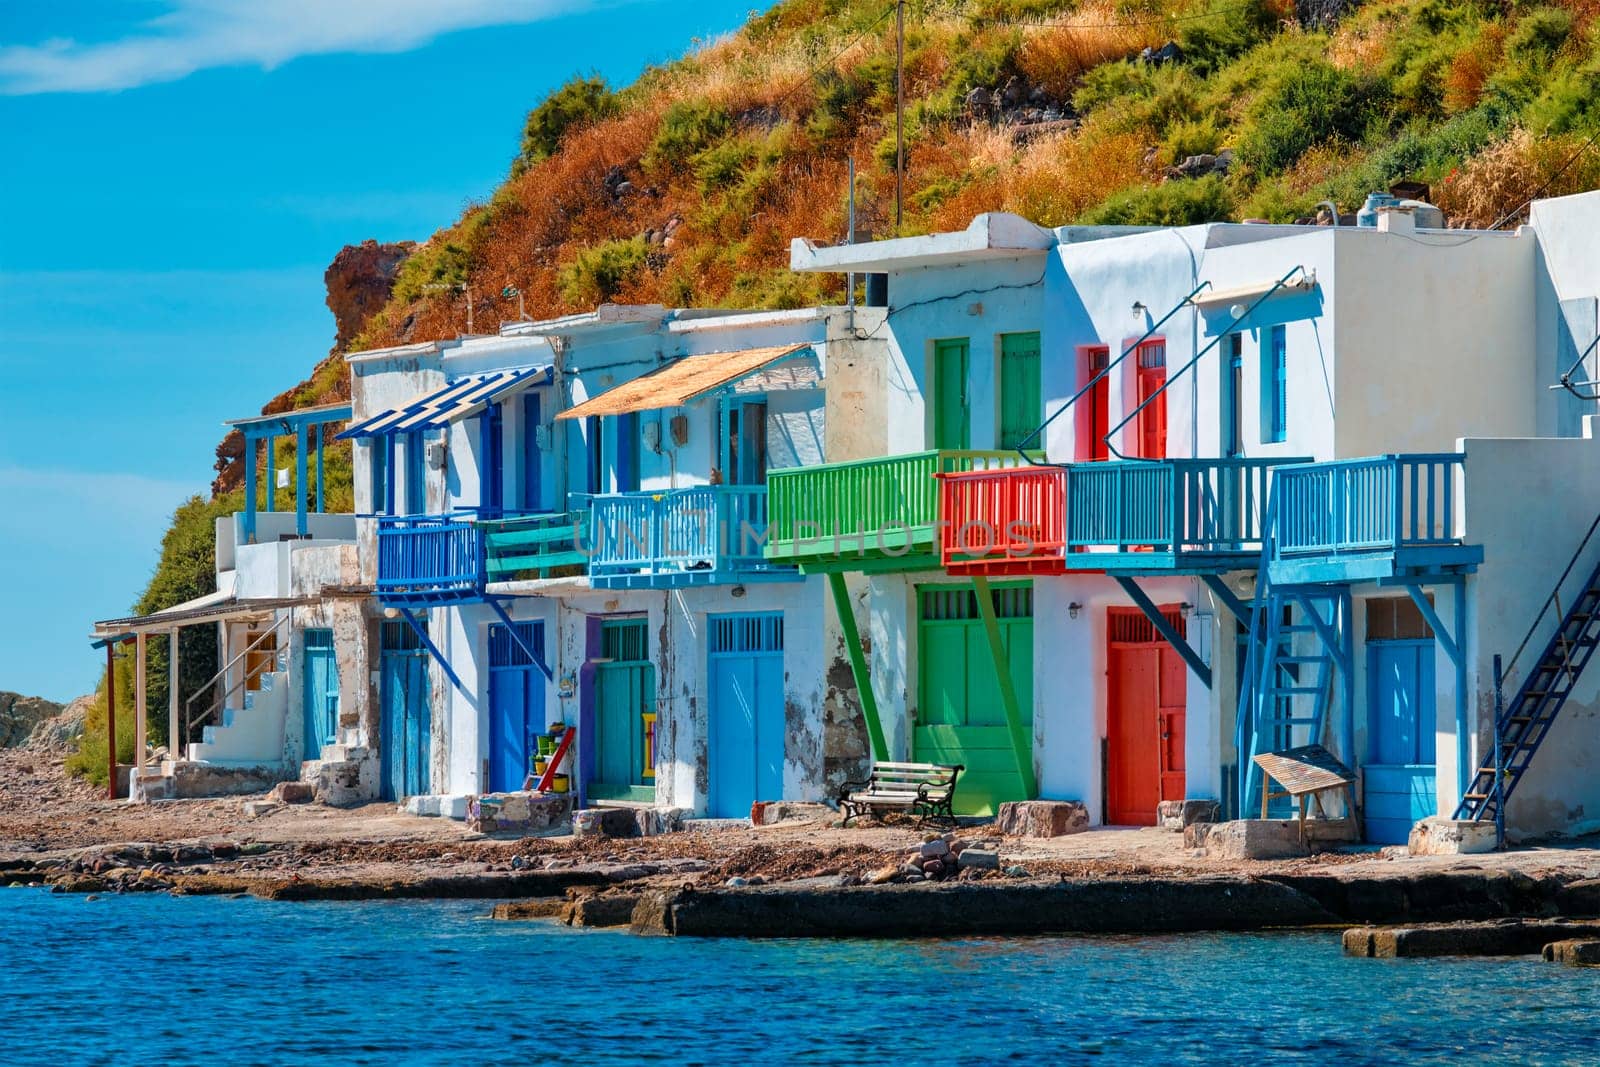 Greek fishing village Klima on Milos island in Greece by dimol